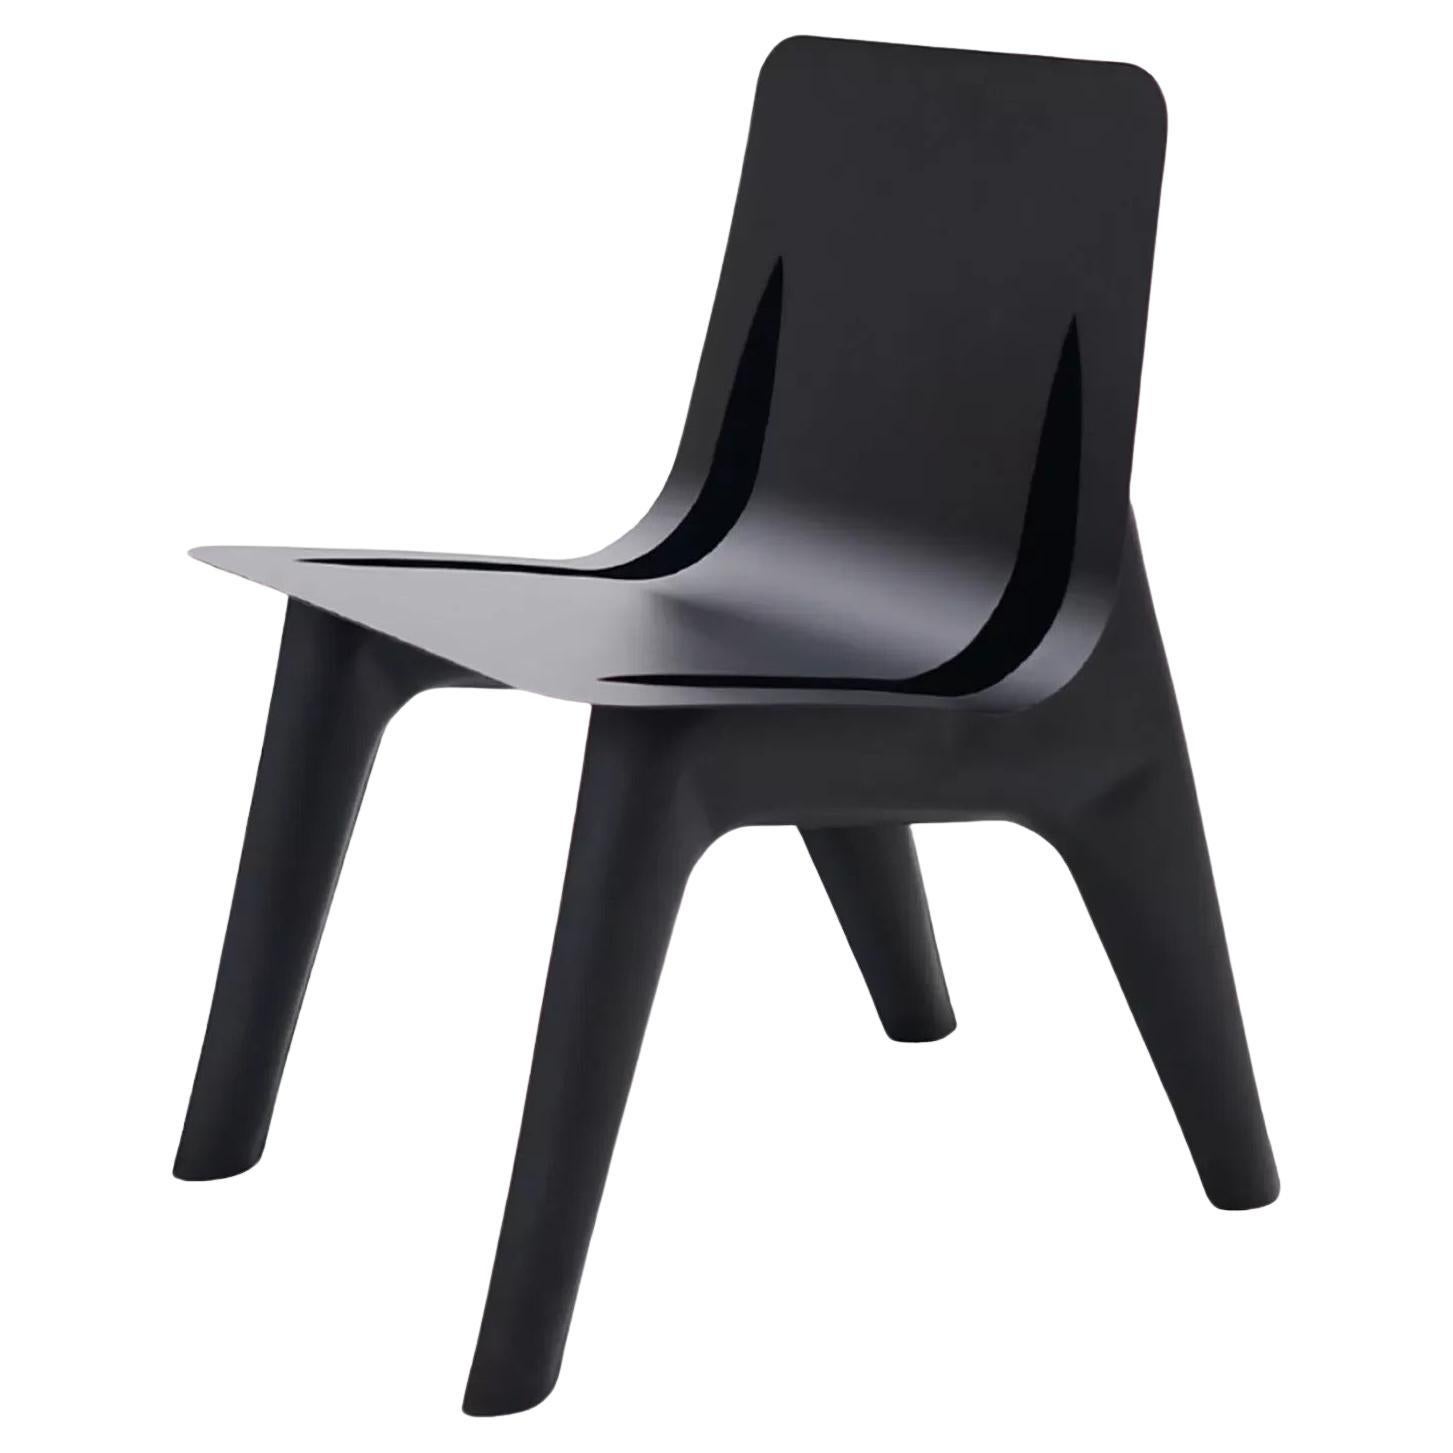 Chaise longue contemporaine "J-Chair" par Zieta, Alumium